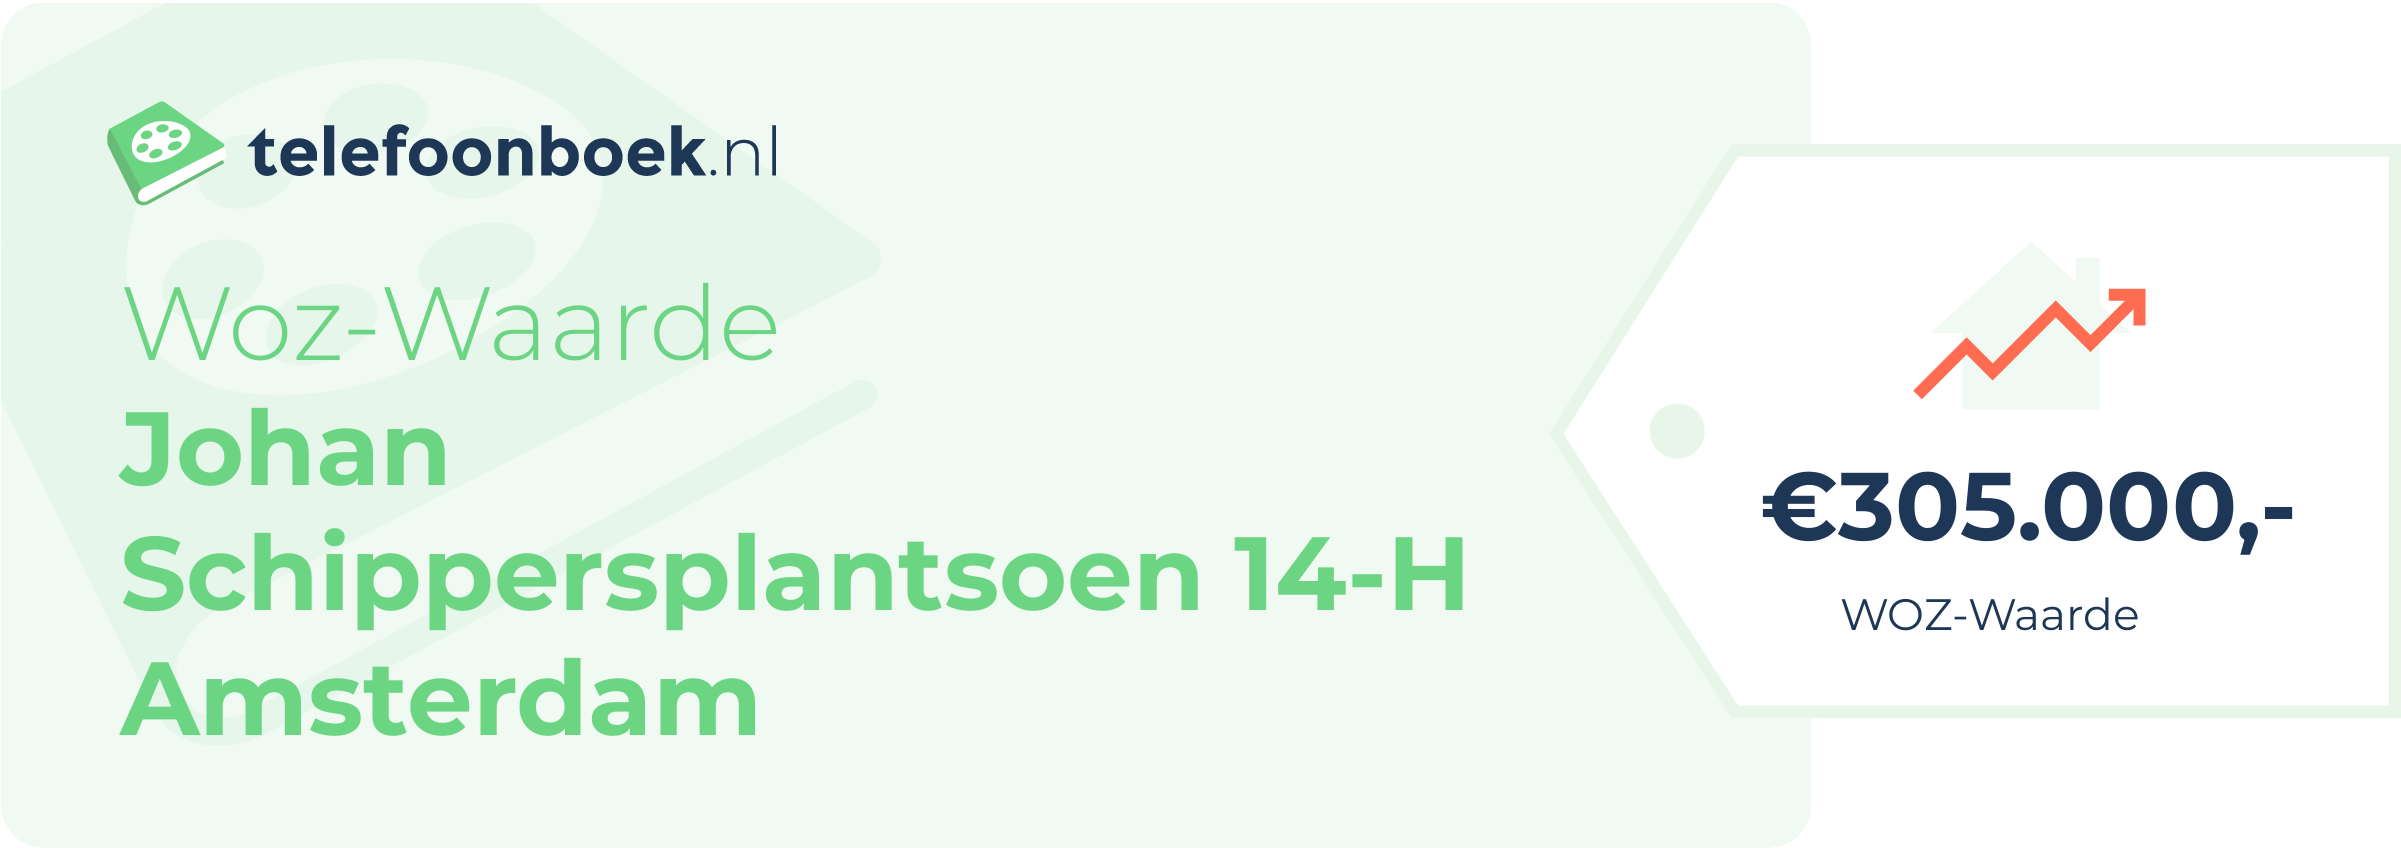 WOZ-waarde Johan Schippersplantsoen 14-H Amsterdam